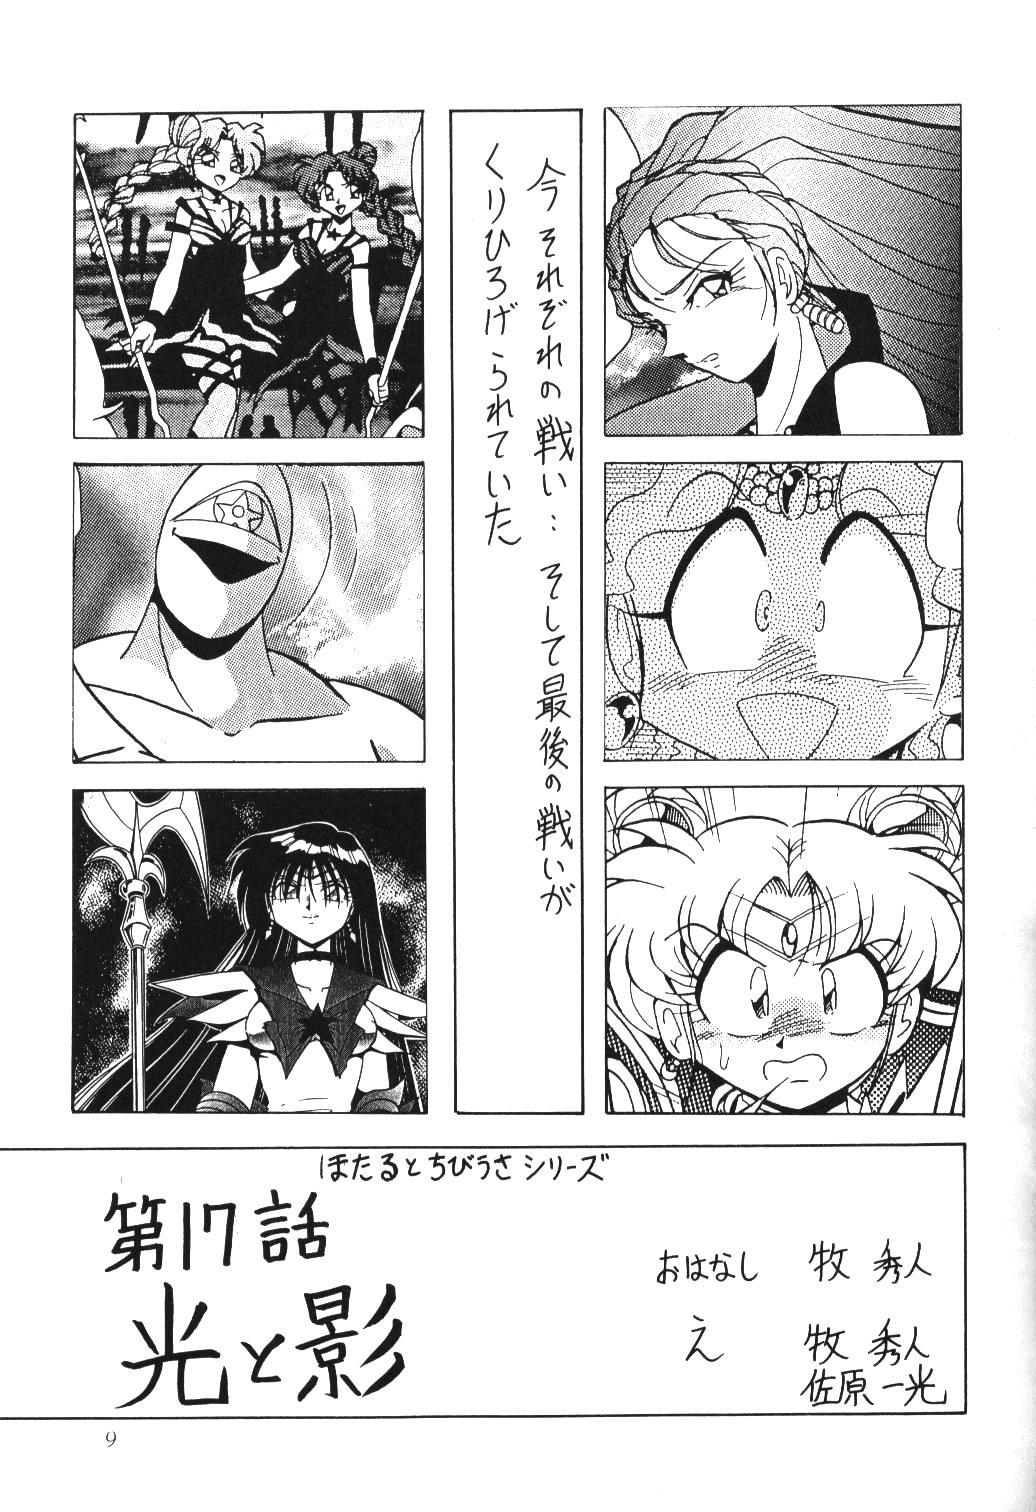 Safada Silent Saturn 10 - Sailor moon Bang Bros - Page 7